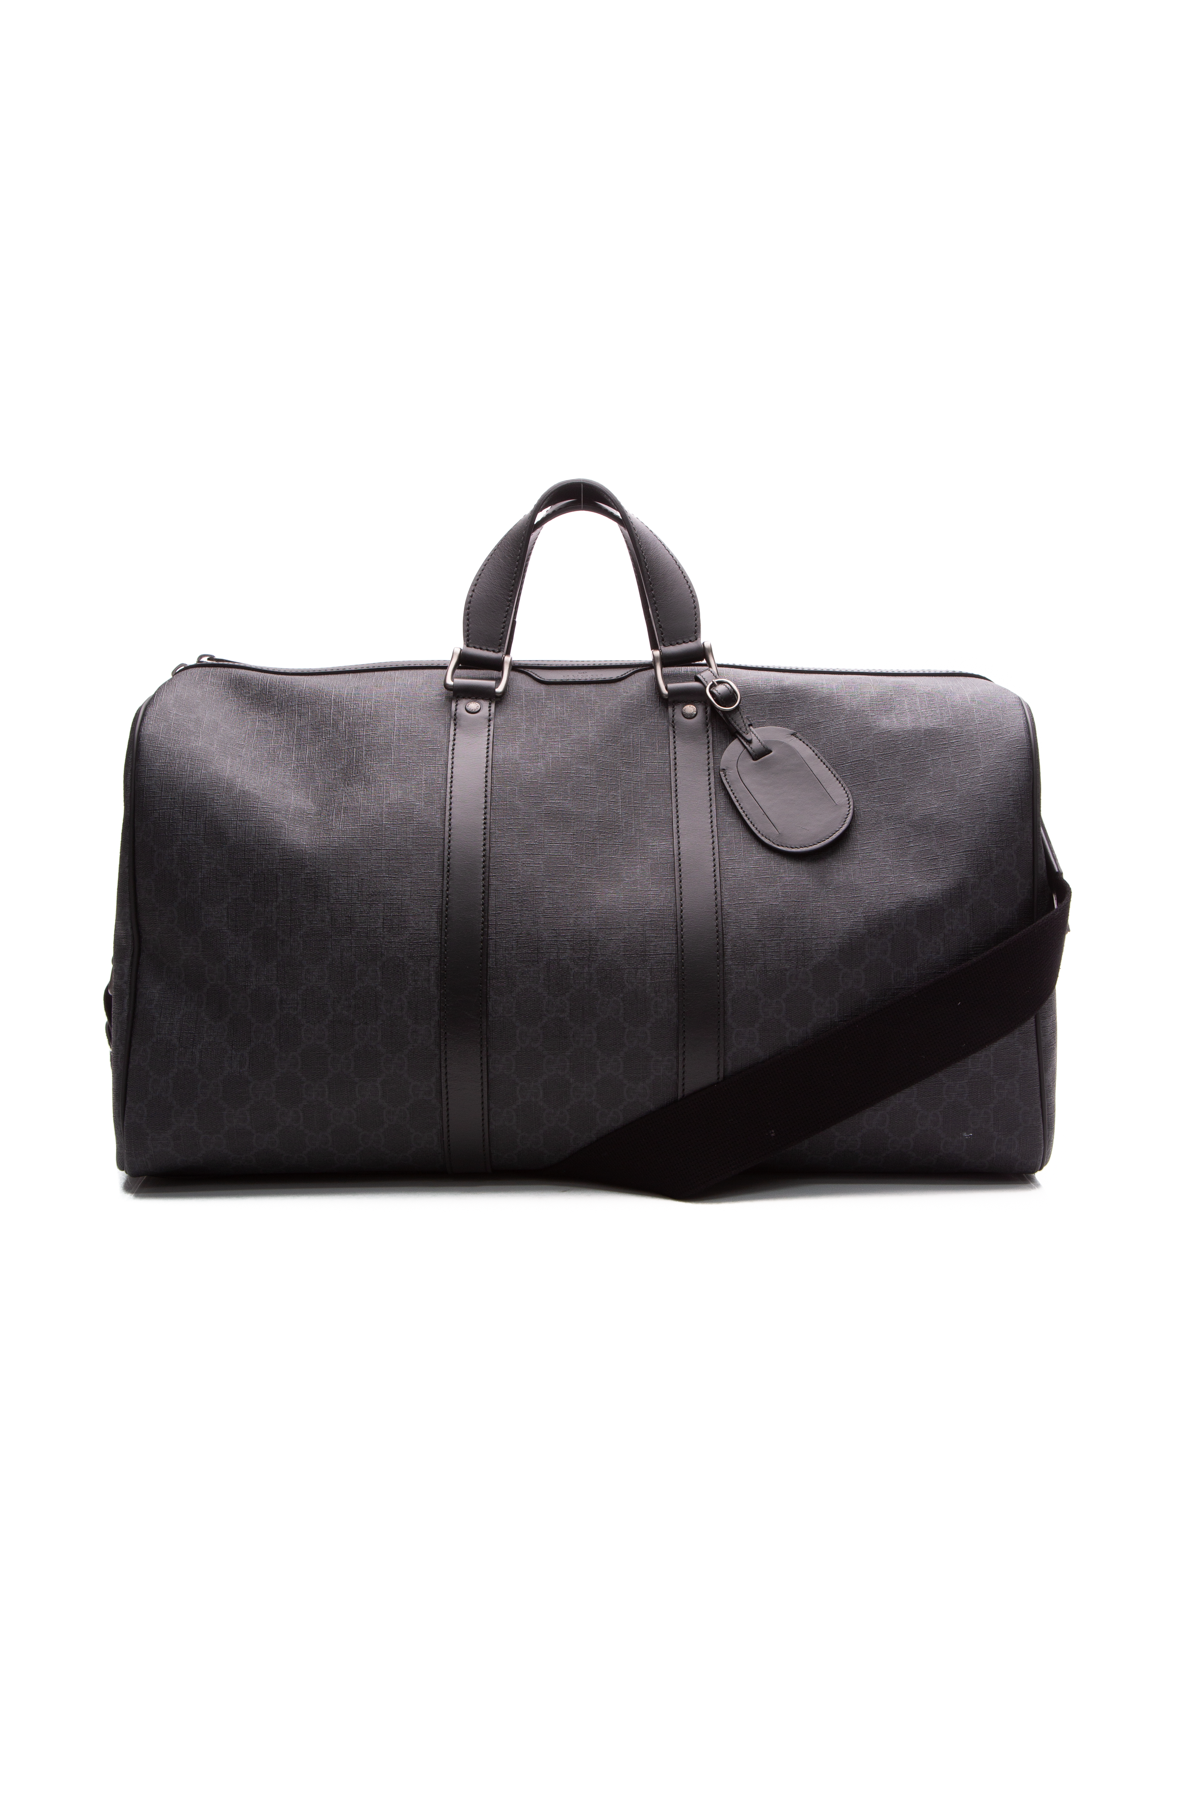 Gucci Vintage Black GG Canvas & Leather Shoulder Crossbody Bag NEVER CARRIED